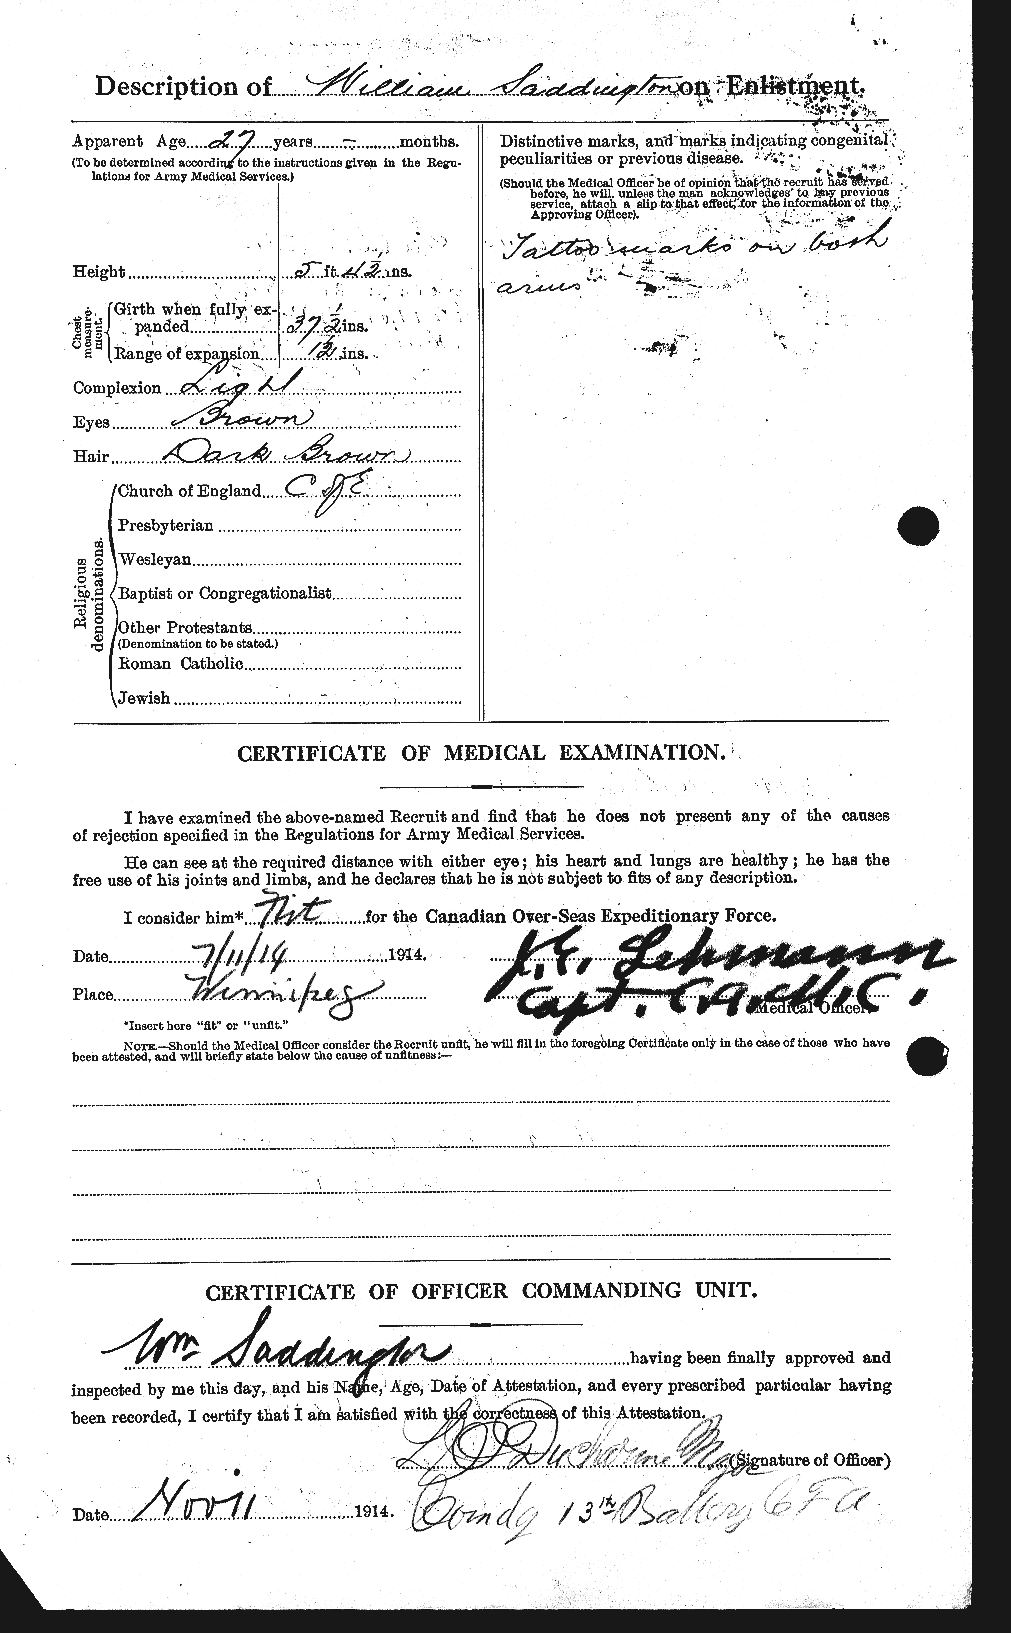 Dossiers du Personnel de la Première Guerre mondiale - CEC 077792b